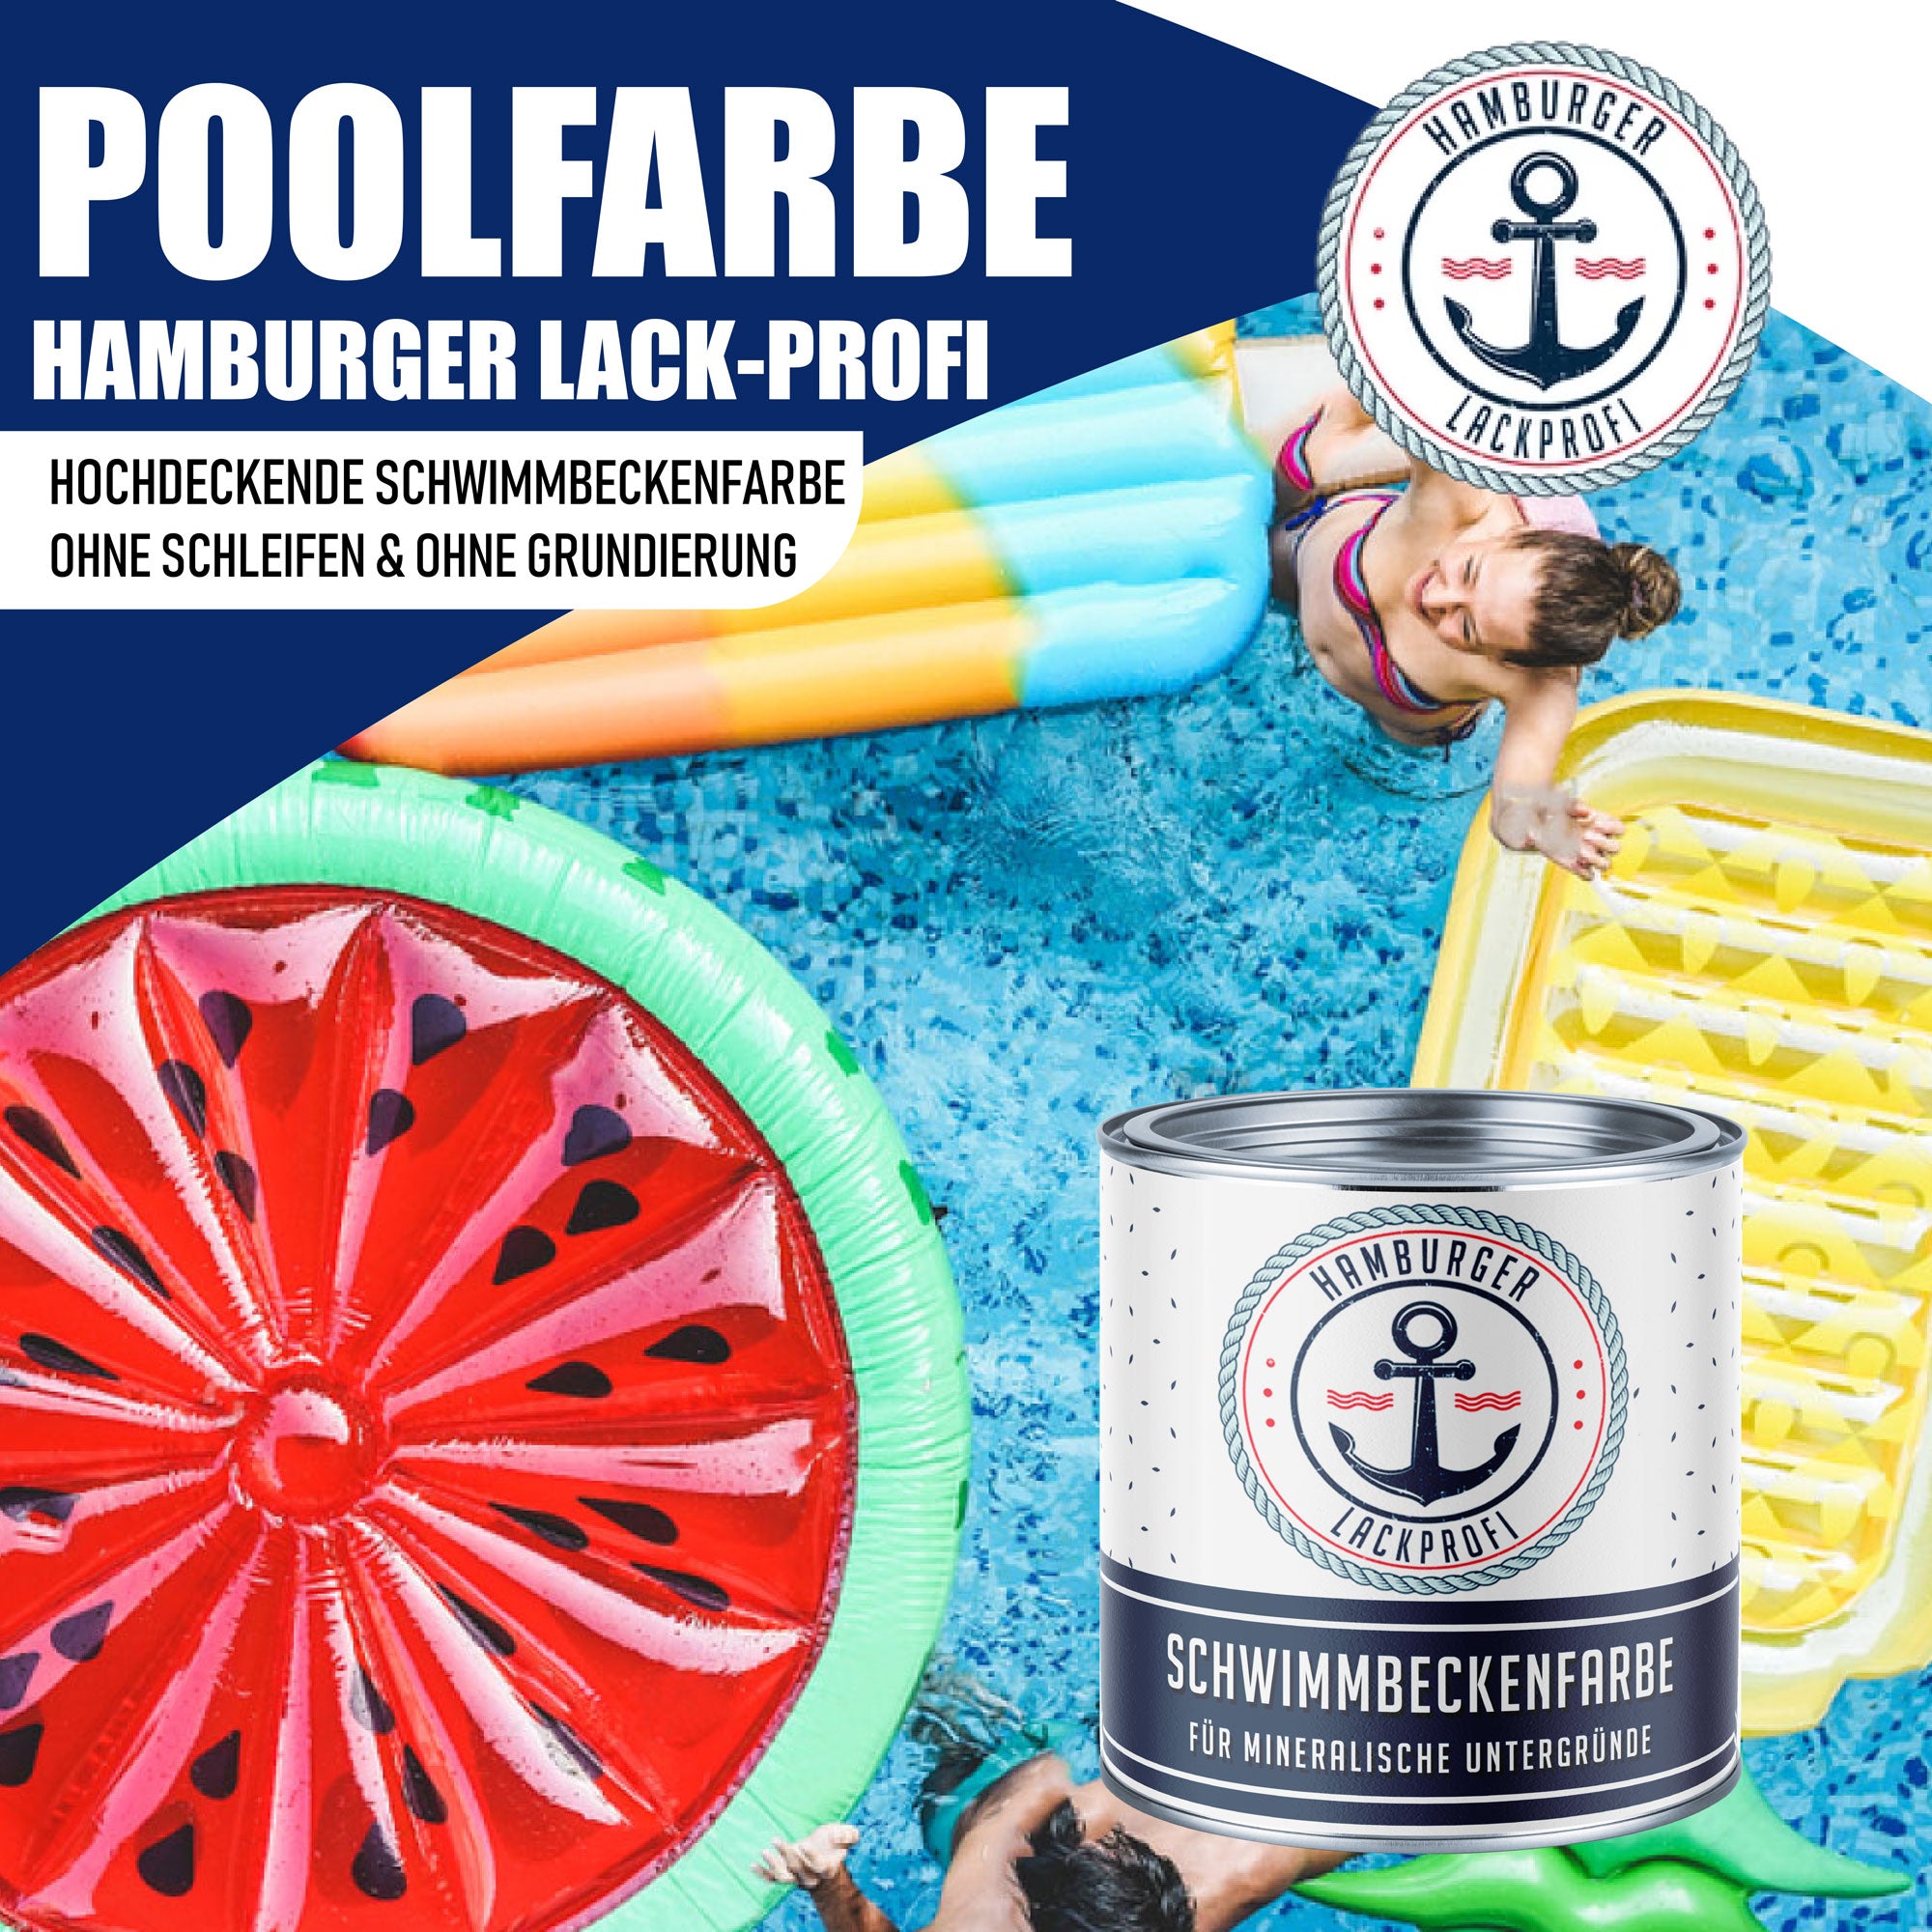 Hamburger Lack-Profi Schwimmbeckenfarbe Gelboliv RAL 6014 - hochdeckende Poolfarbe